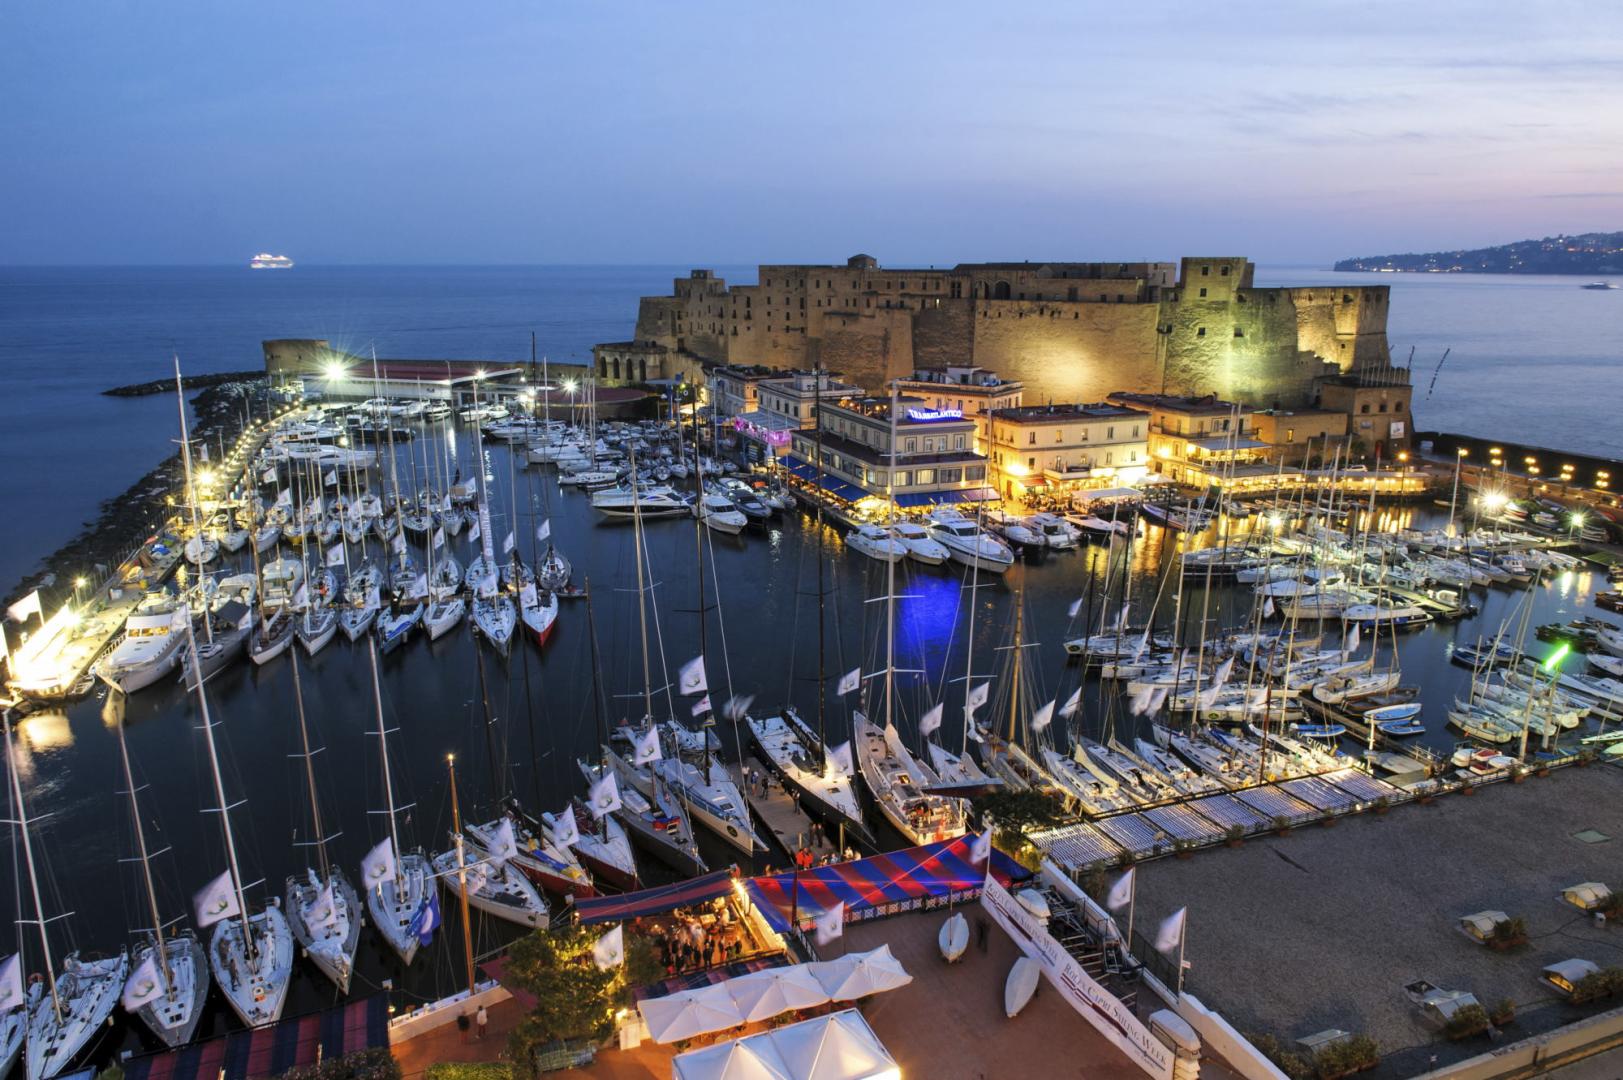 A poco più di 24 ore dall’inizio della Rolex Capri Sailing Week arrivano nel golfo di Napoli oltre 120 imbarcazioni che parteciperanno all’evento internazionale